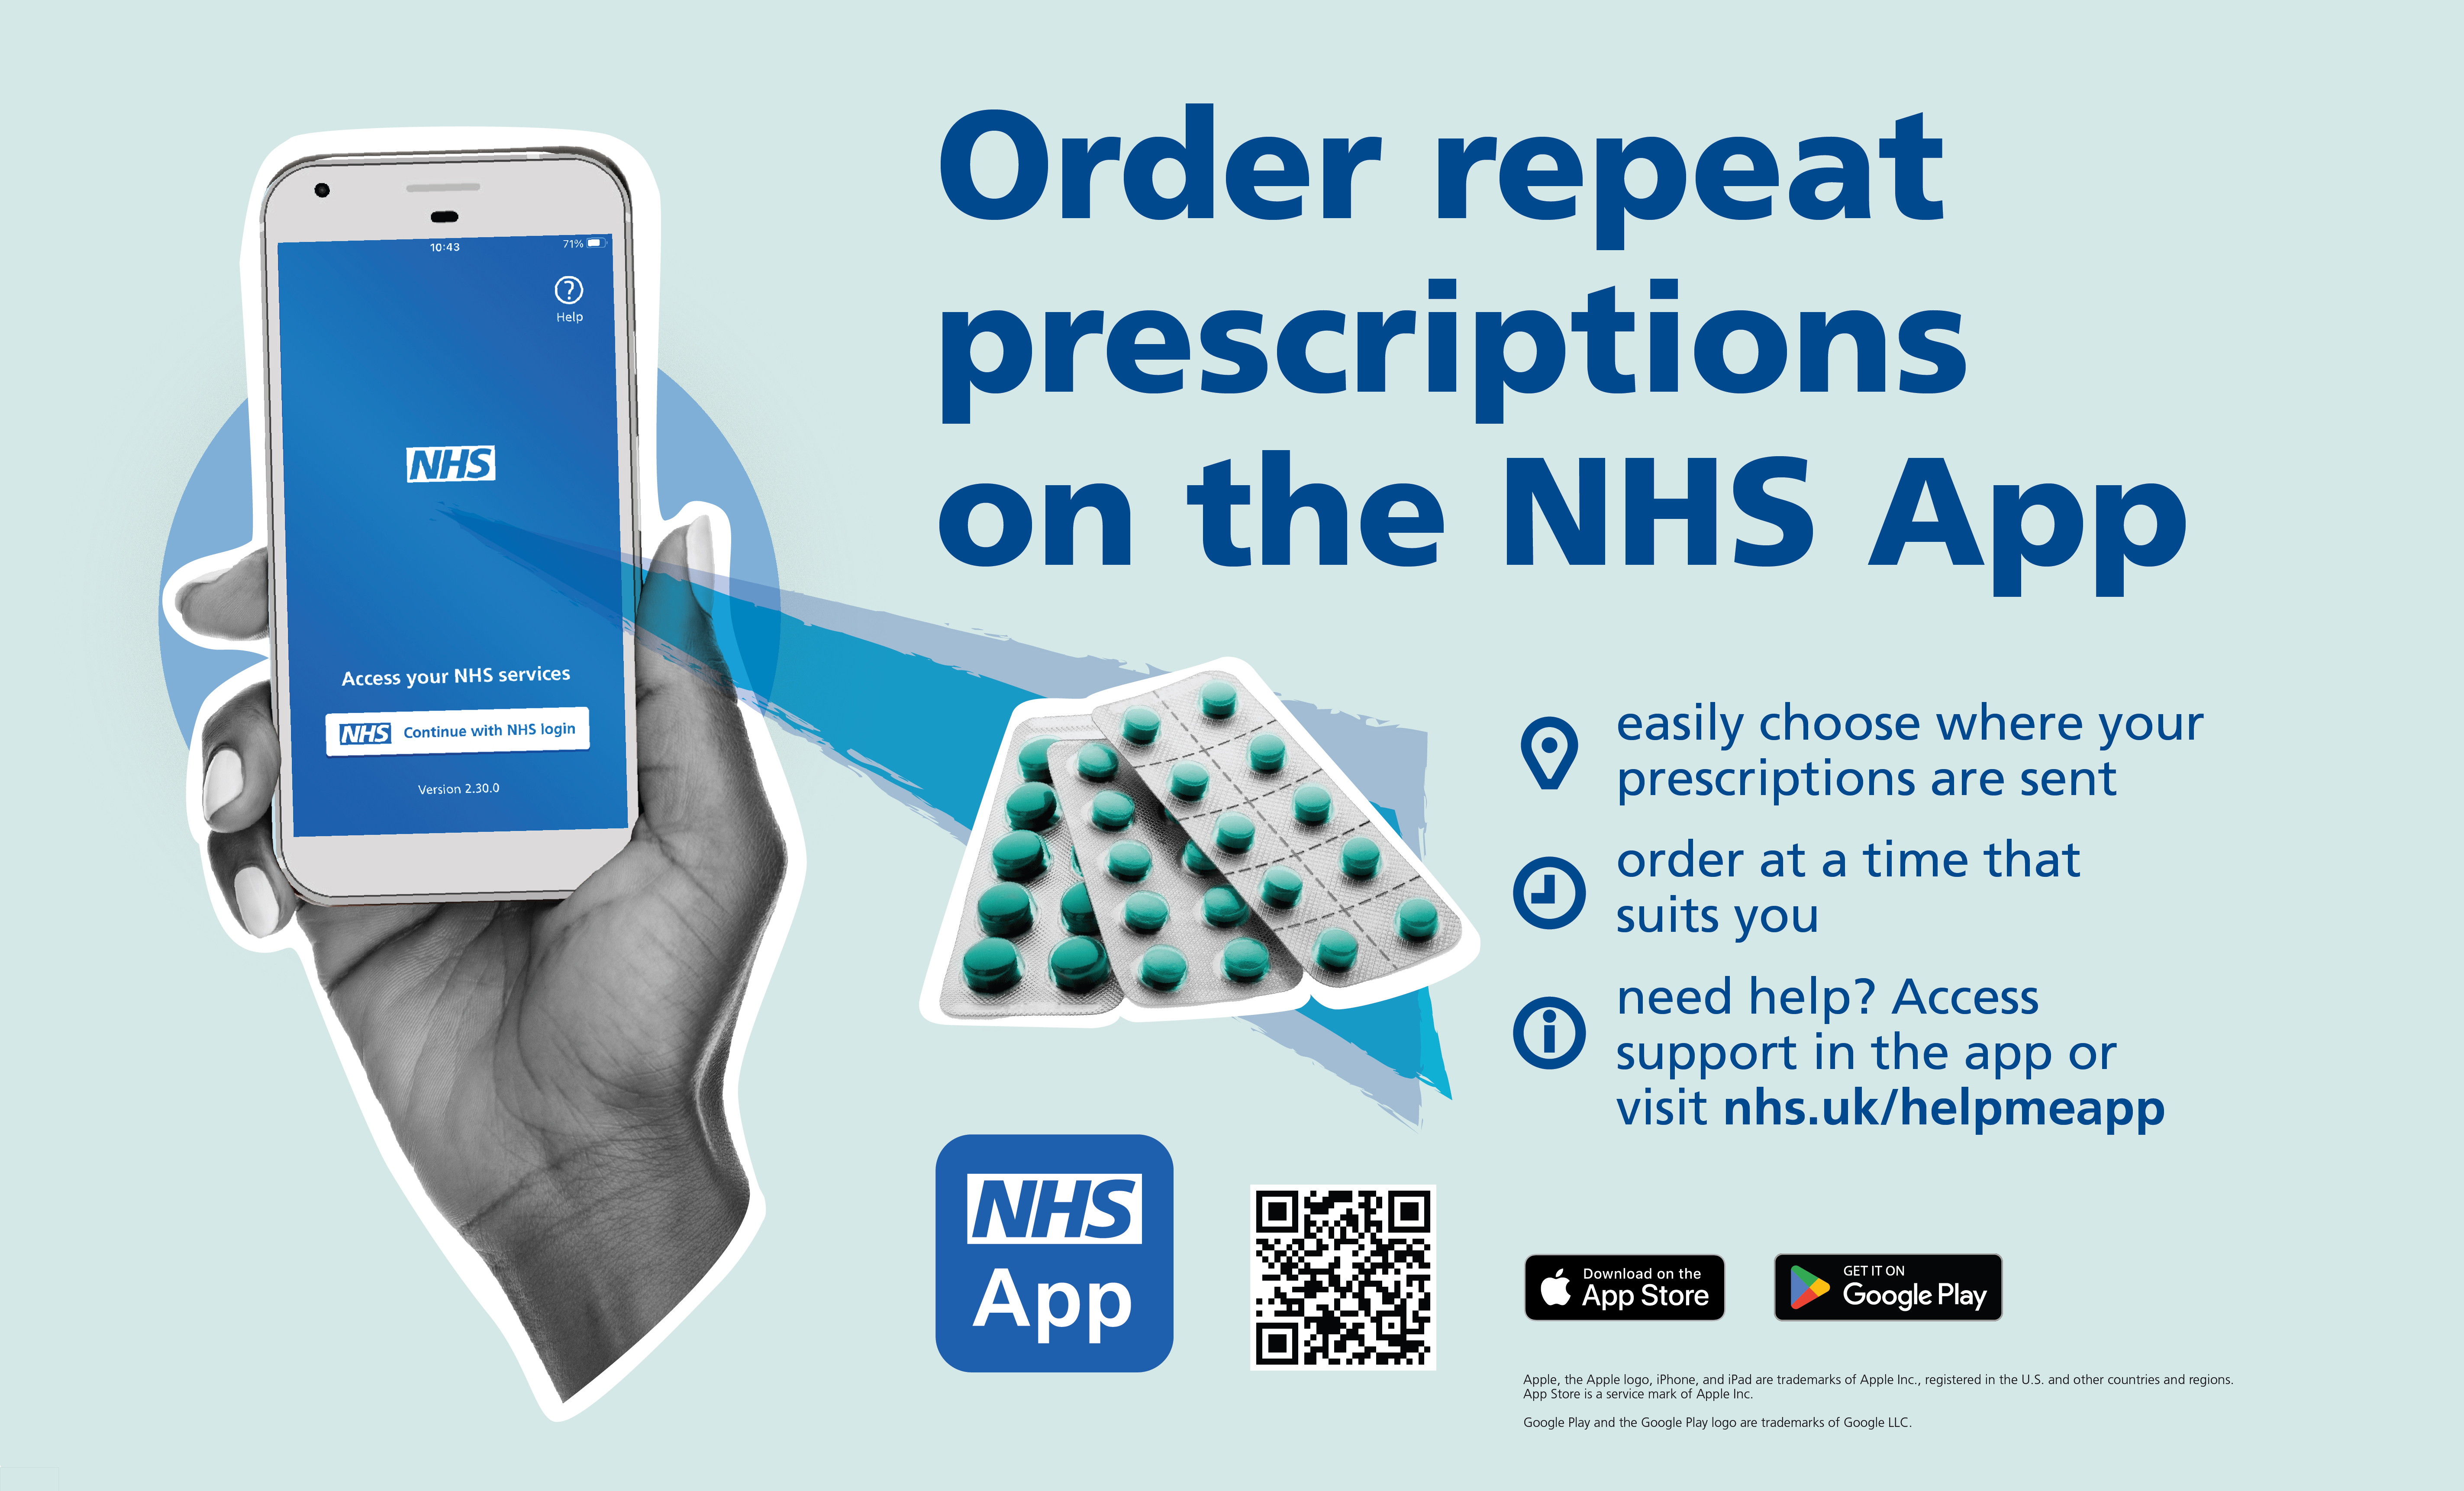 Order Repeat prescriptions on the NHS App